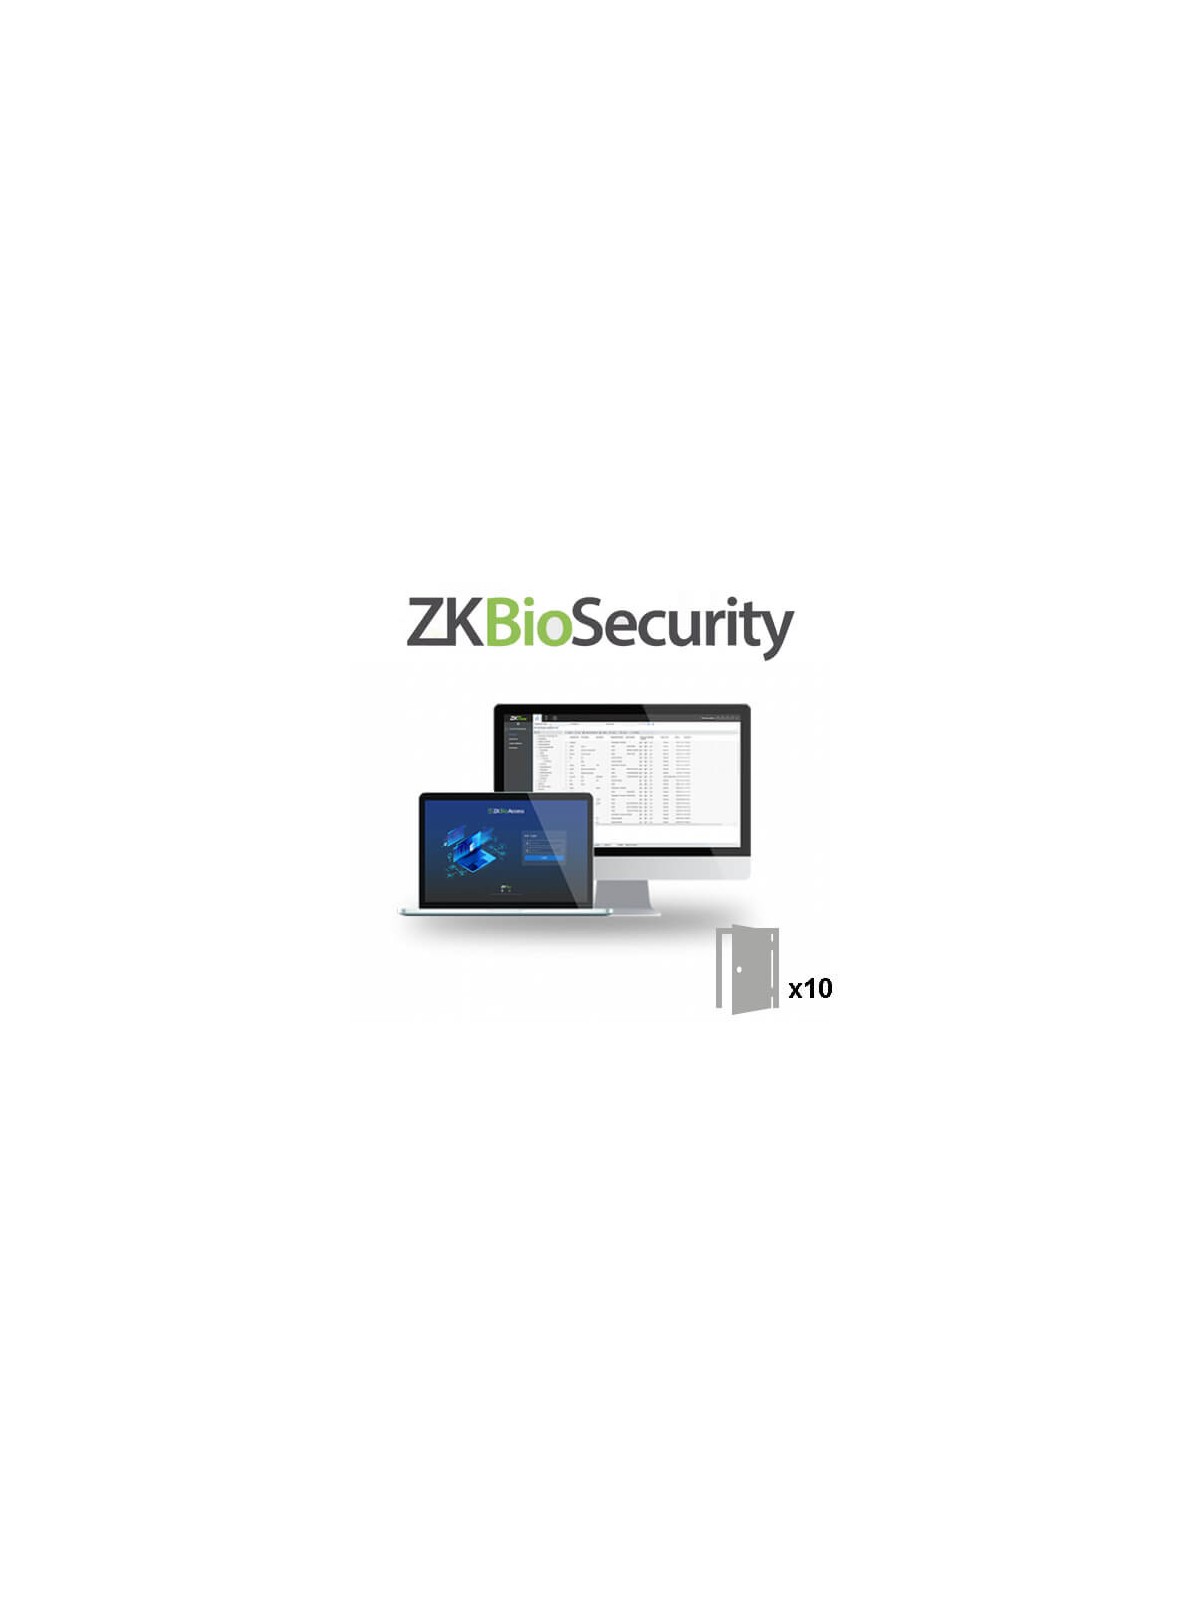 Licencia software control de accesos ZKTeco ZK-BIOSECURITY-10D 10 puertas